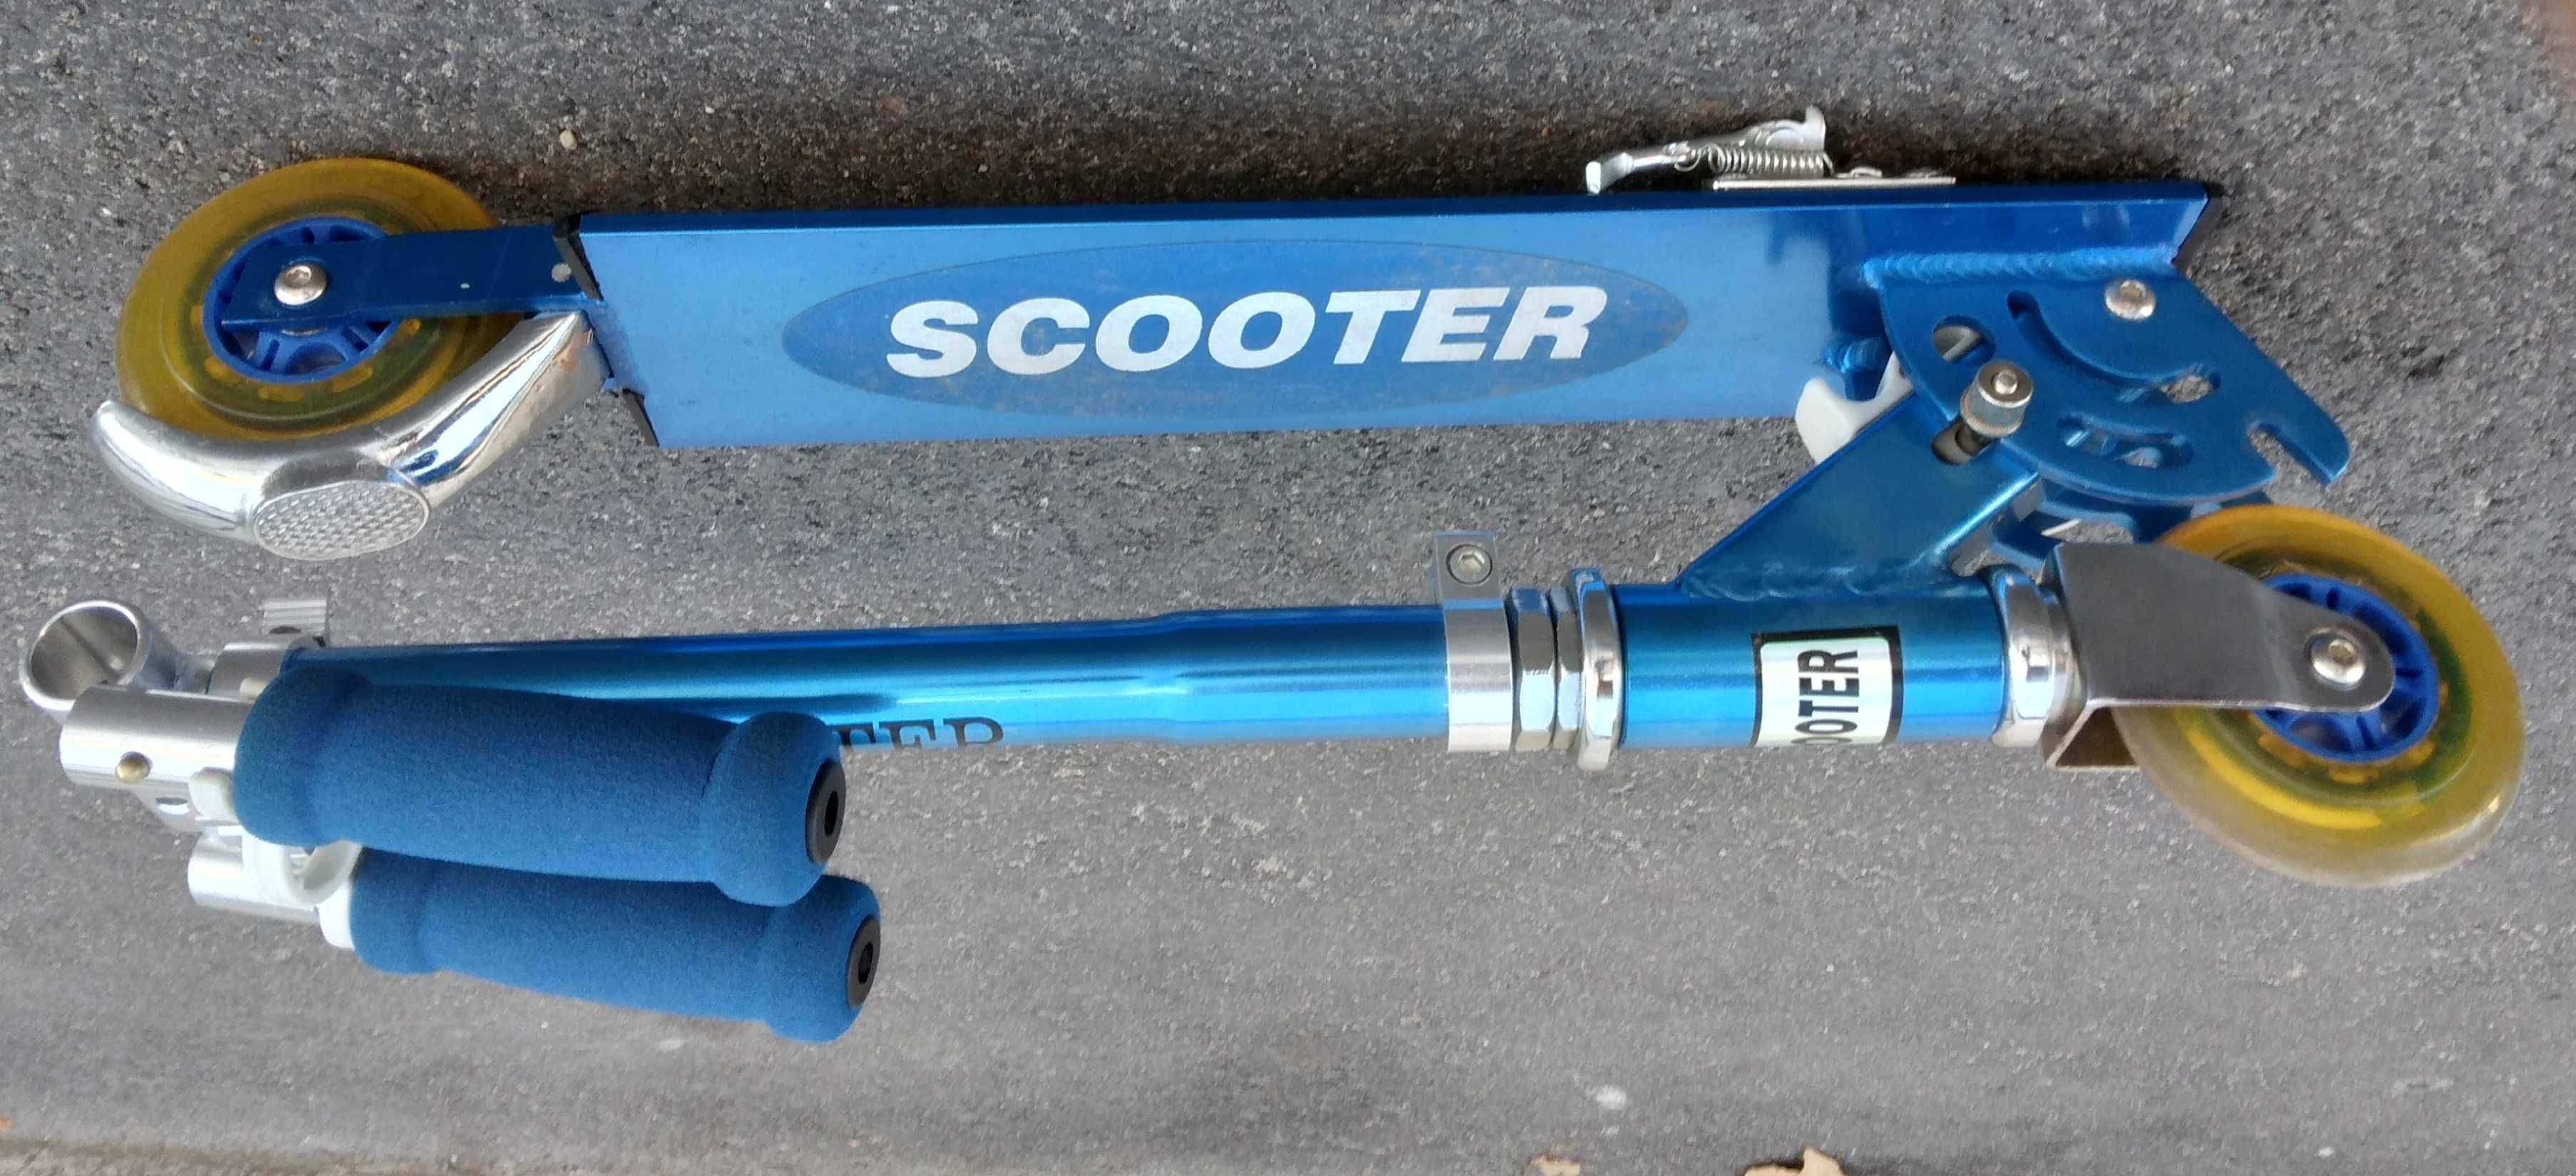 Trotineta da scooter, praticamente nova